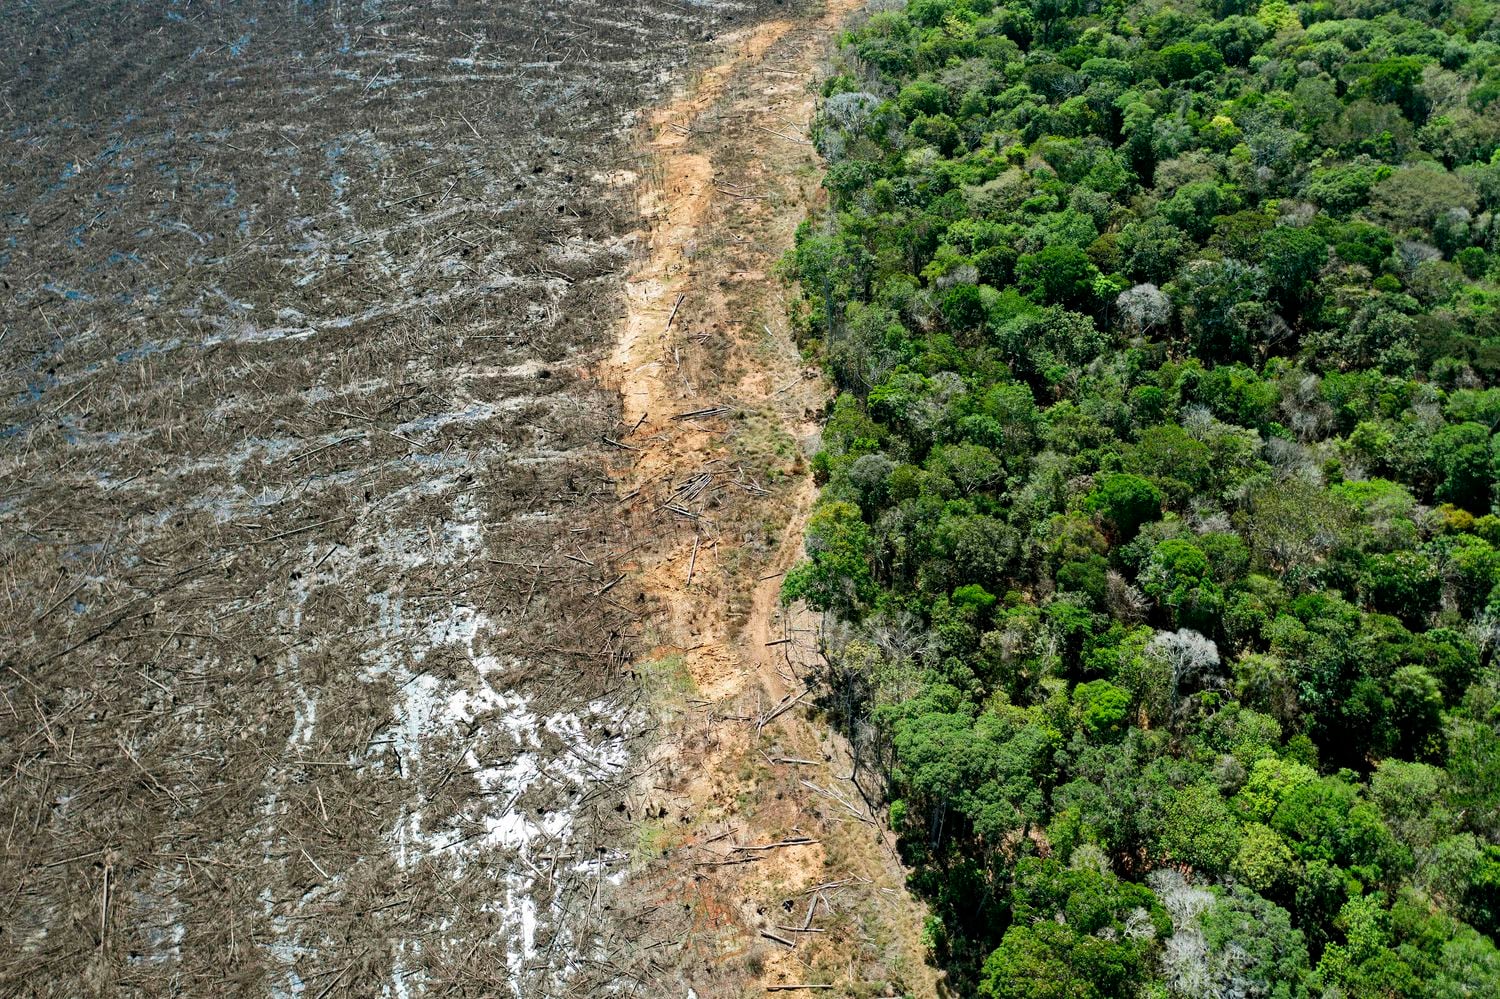 Foto aérea tirada em 07 de agosto de 2020 de uma área desmatada próxima a Sinop, Estado de Mato Grosso, Brasil.